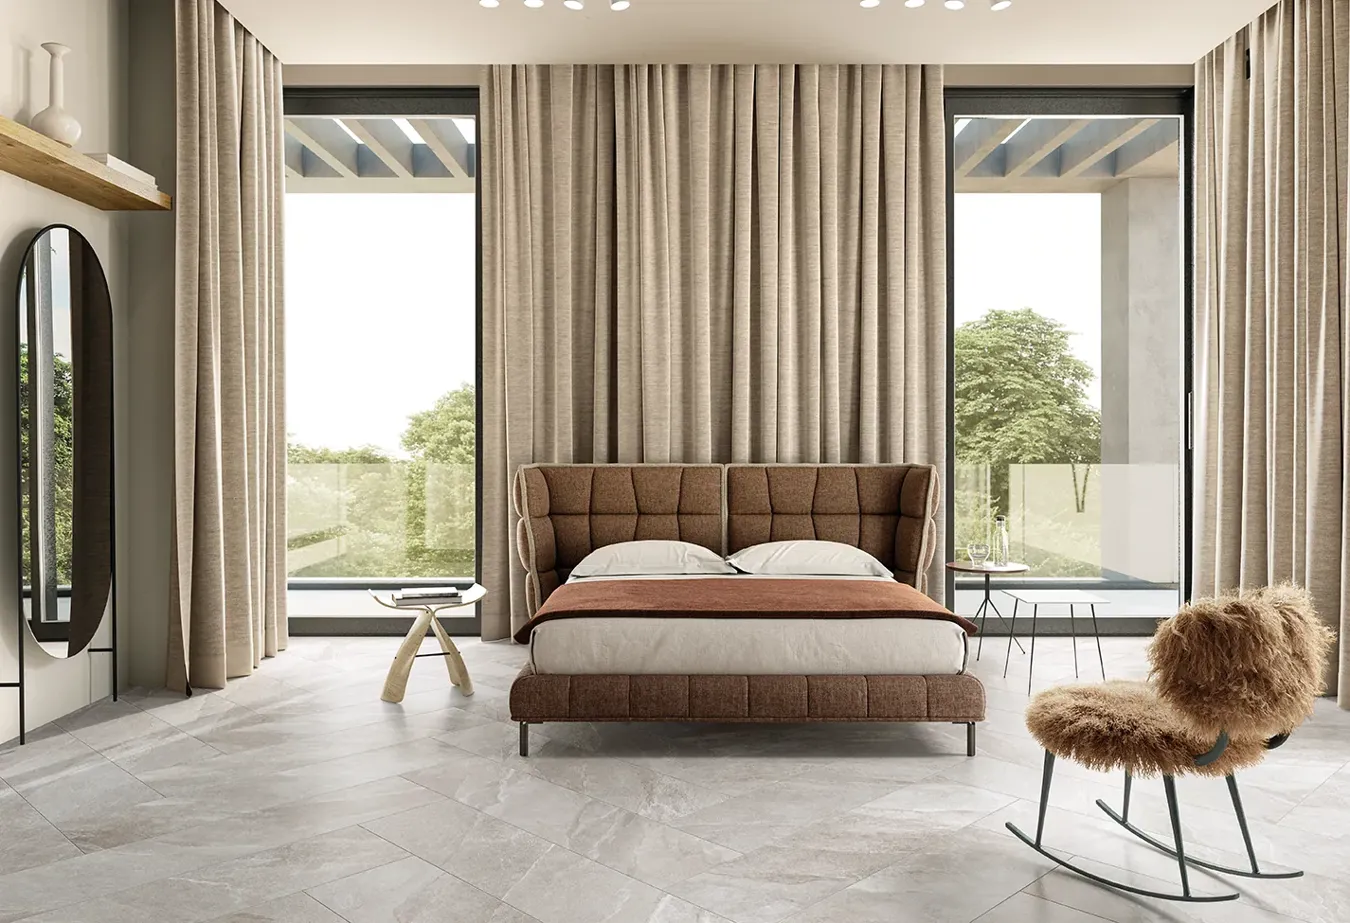 Stilvolles Schlafzimmer mit greige Steineffekt-Fliesen der Ubik-Kollektion, gepolstertem braunem Bett und abgestimmten Vorhängen.